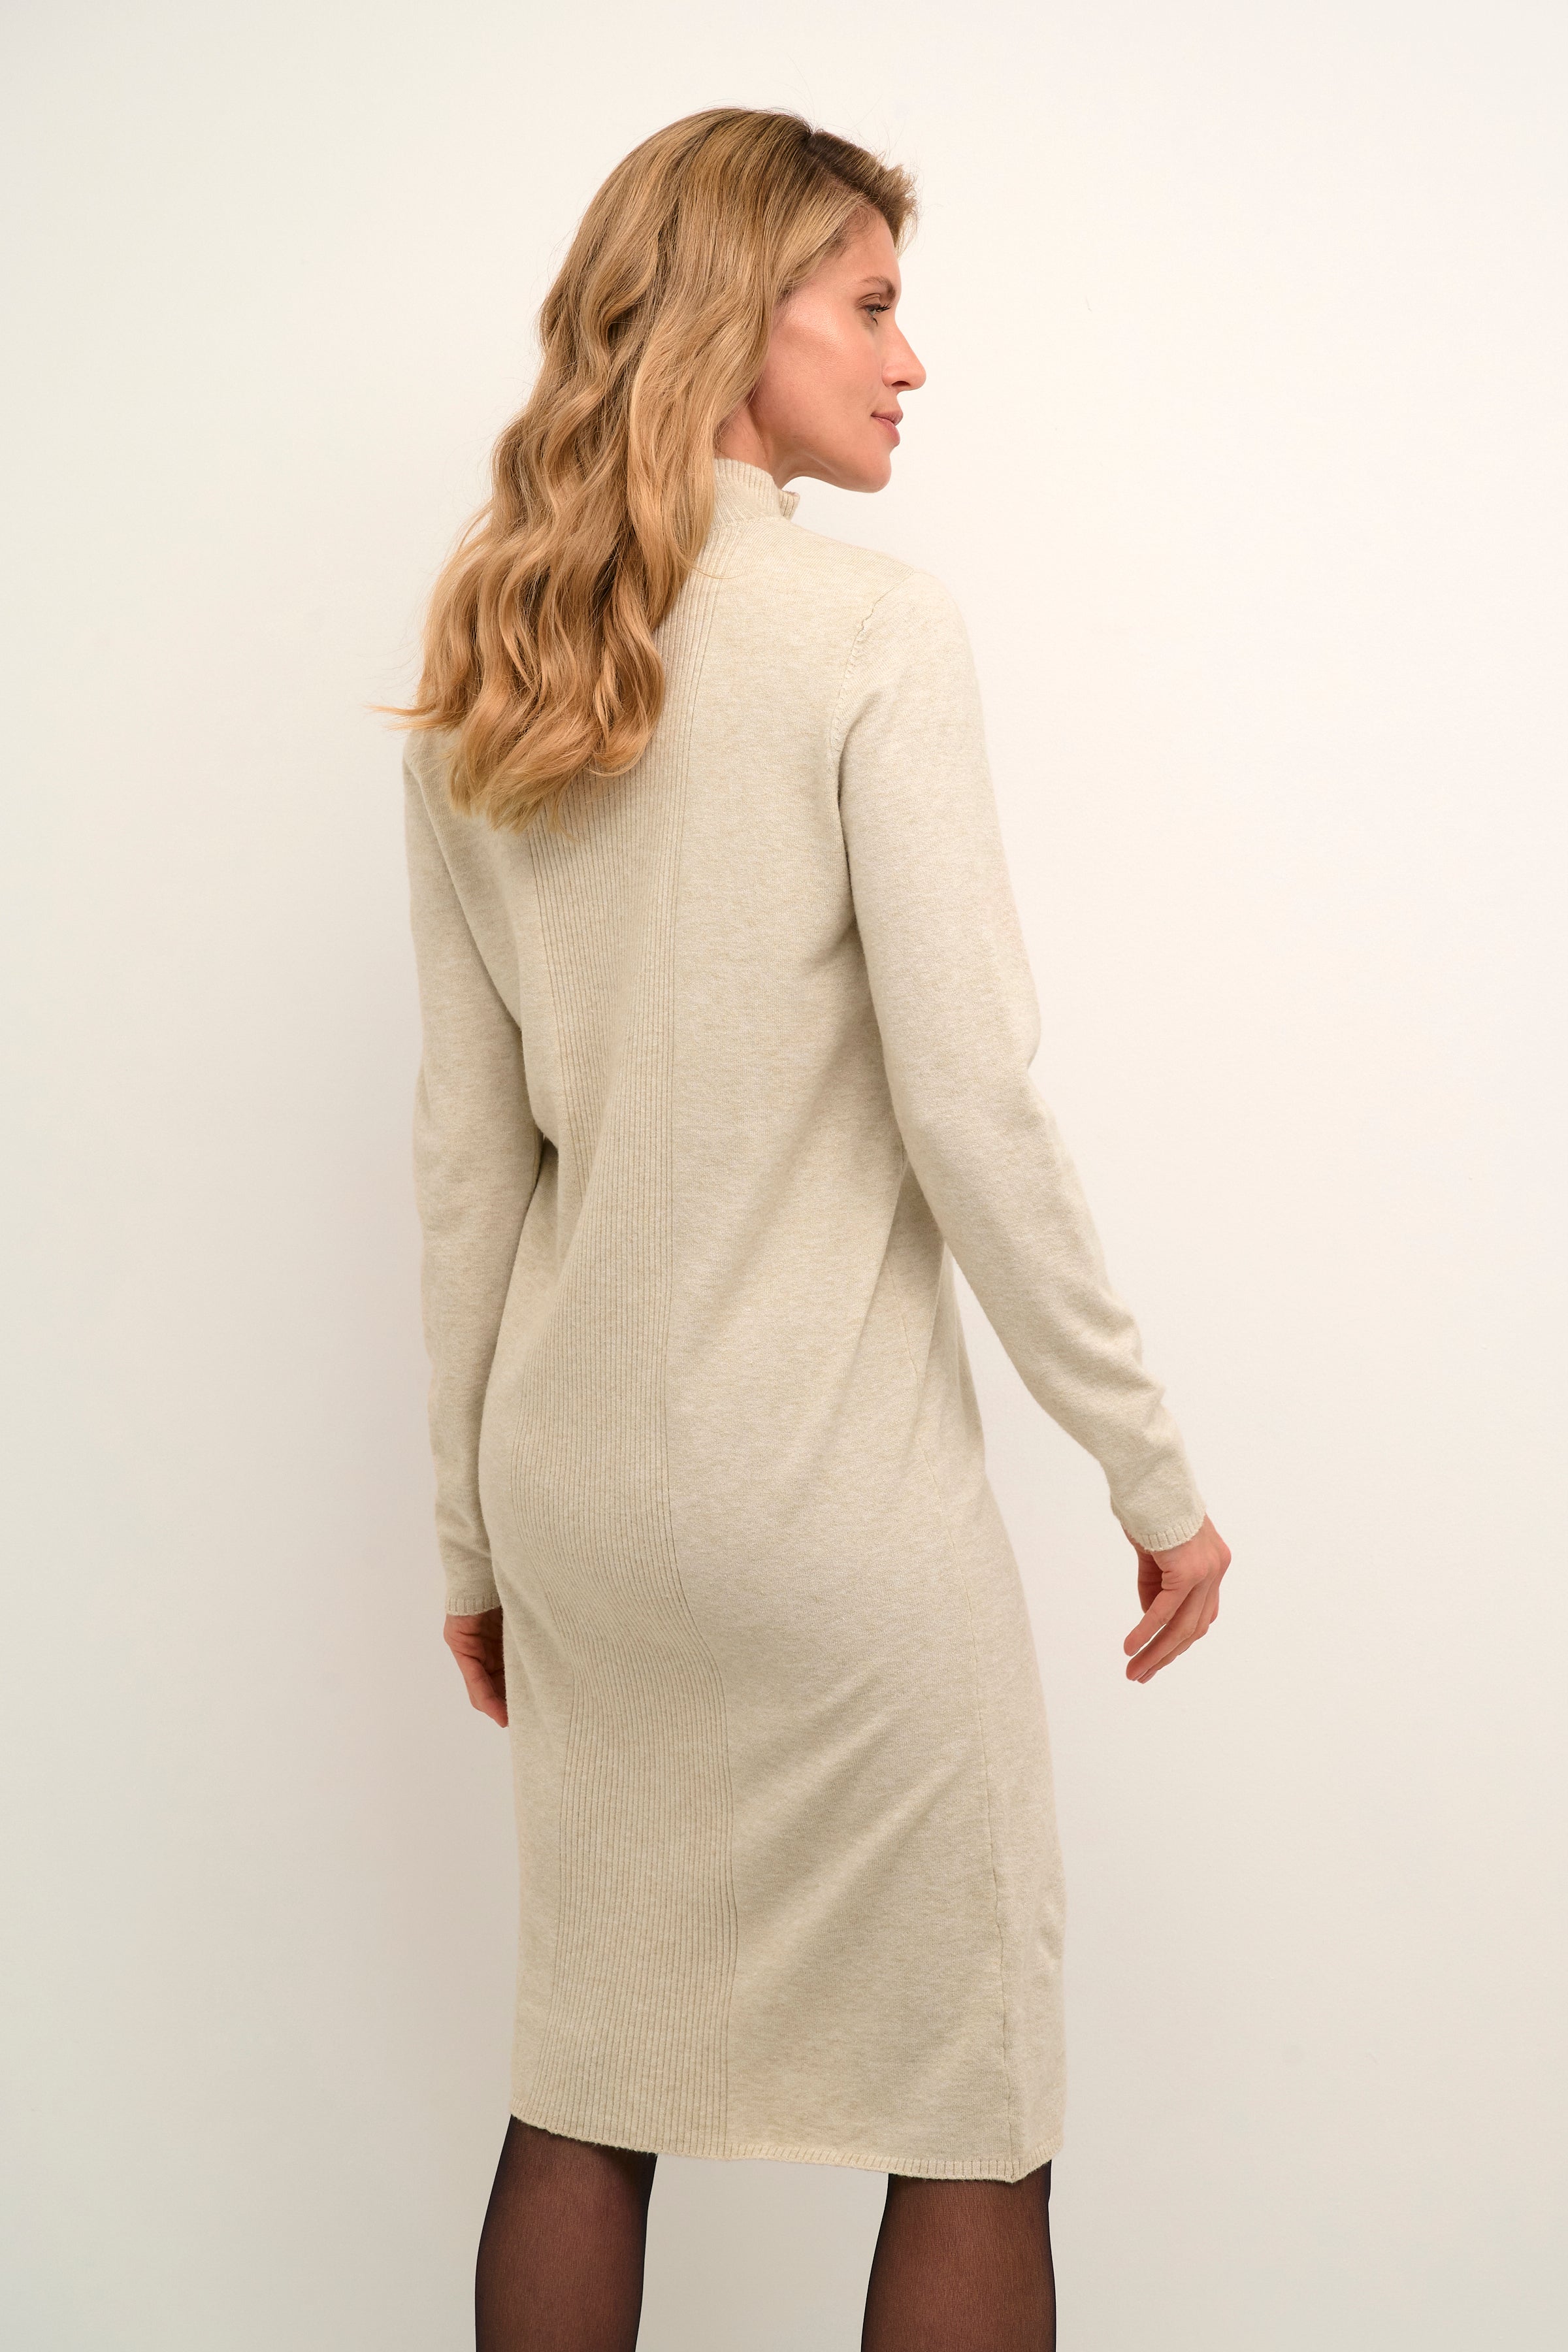 Dela knit dress by Cream - oat melange